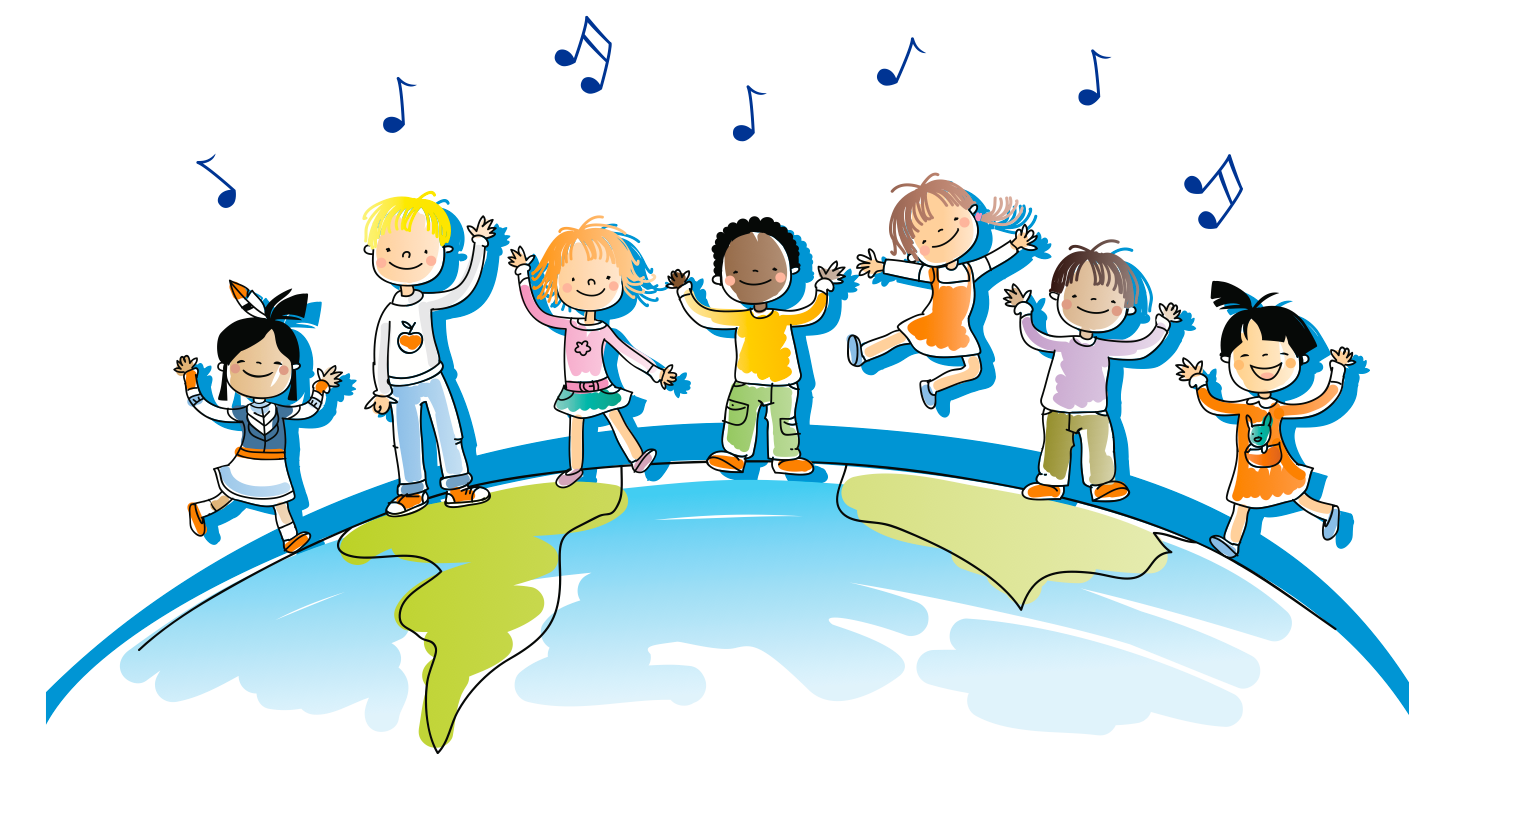 Music Education Teaching Children to Love Music